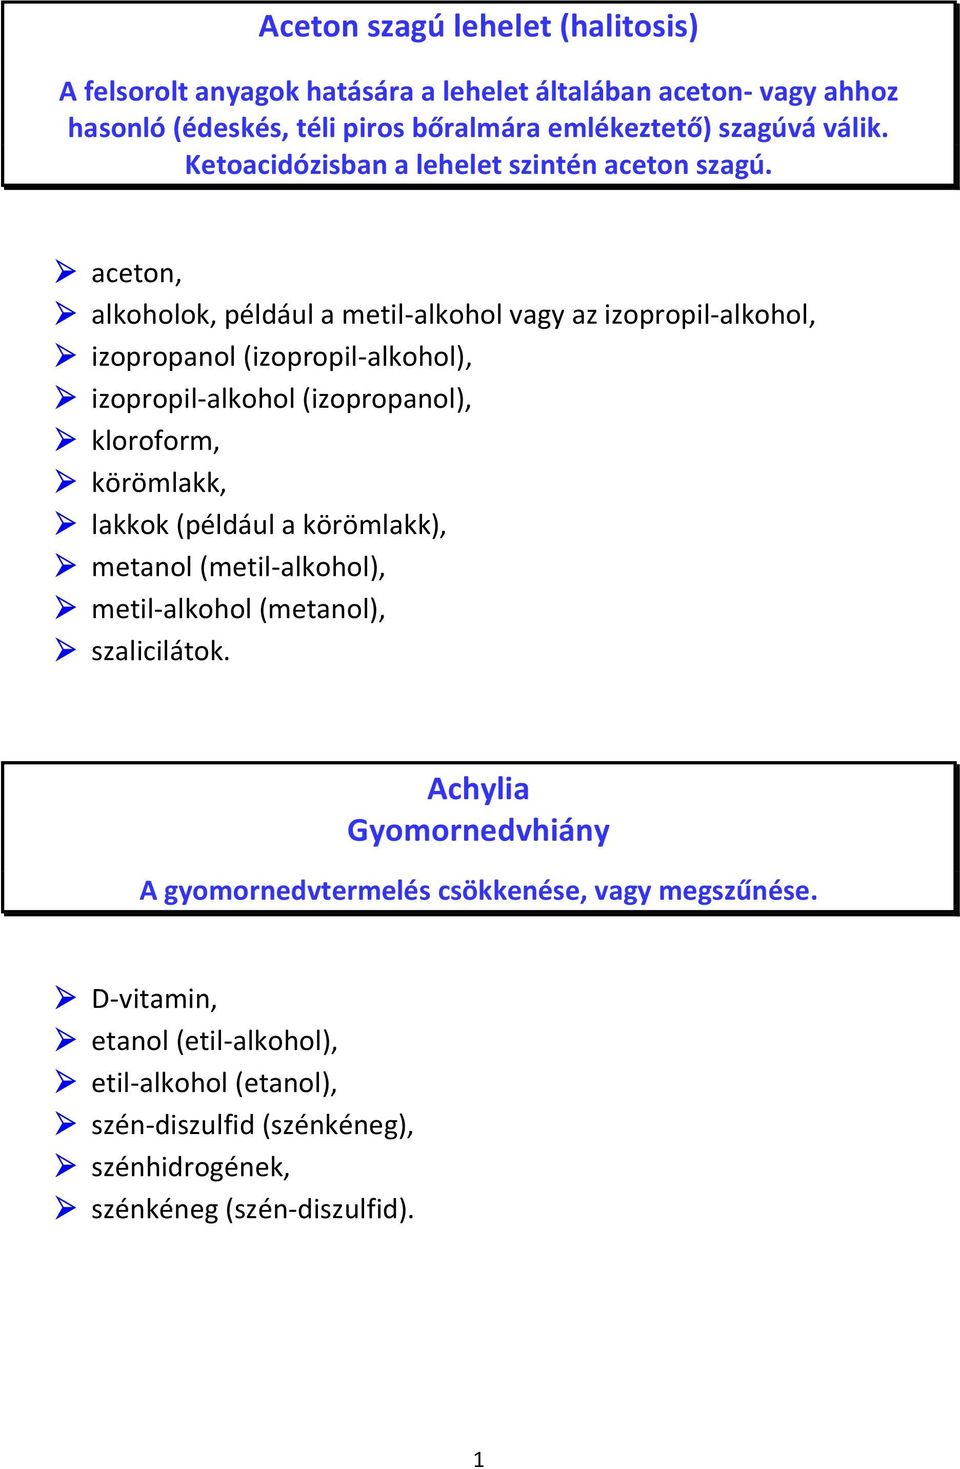 aceton, alkoholok, például a metil-alkohol vagy az izopropil-alkohol, izopropanol (izopropil-alkohol), izopropil-alkohol (izopropanol), kloroform, körömlakk, lakkok